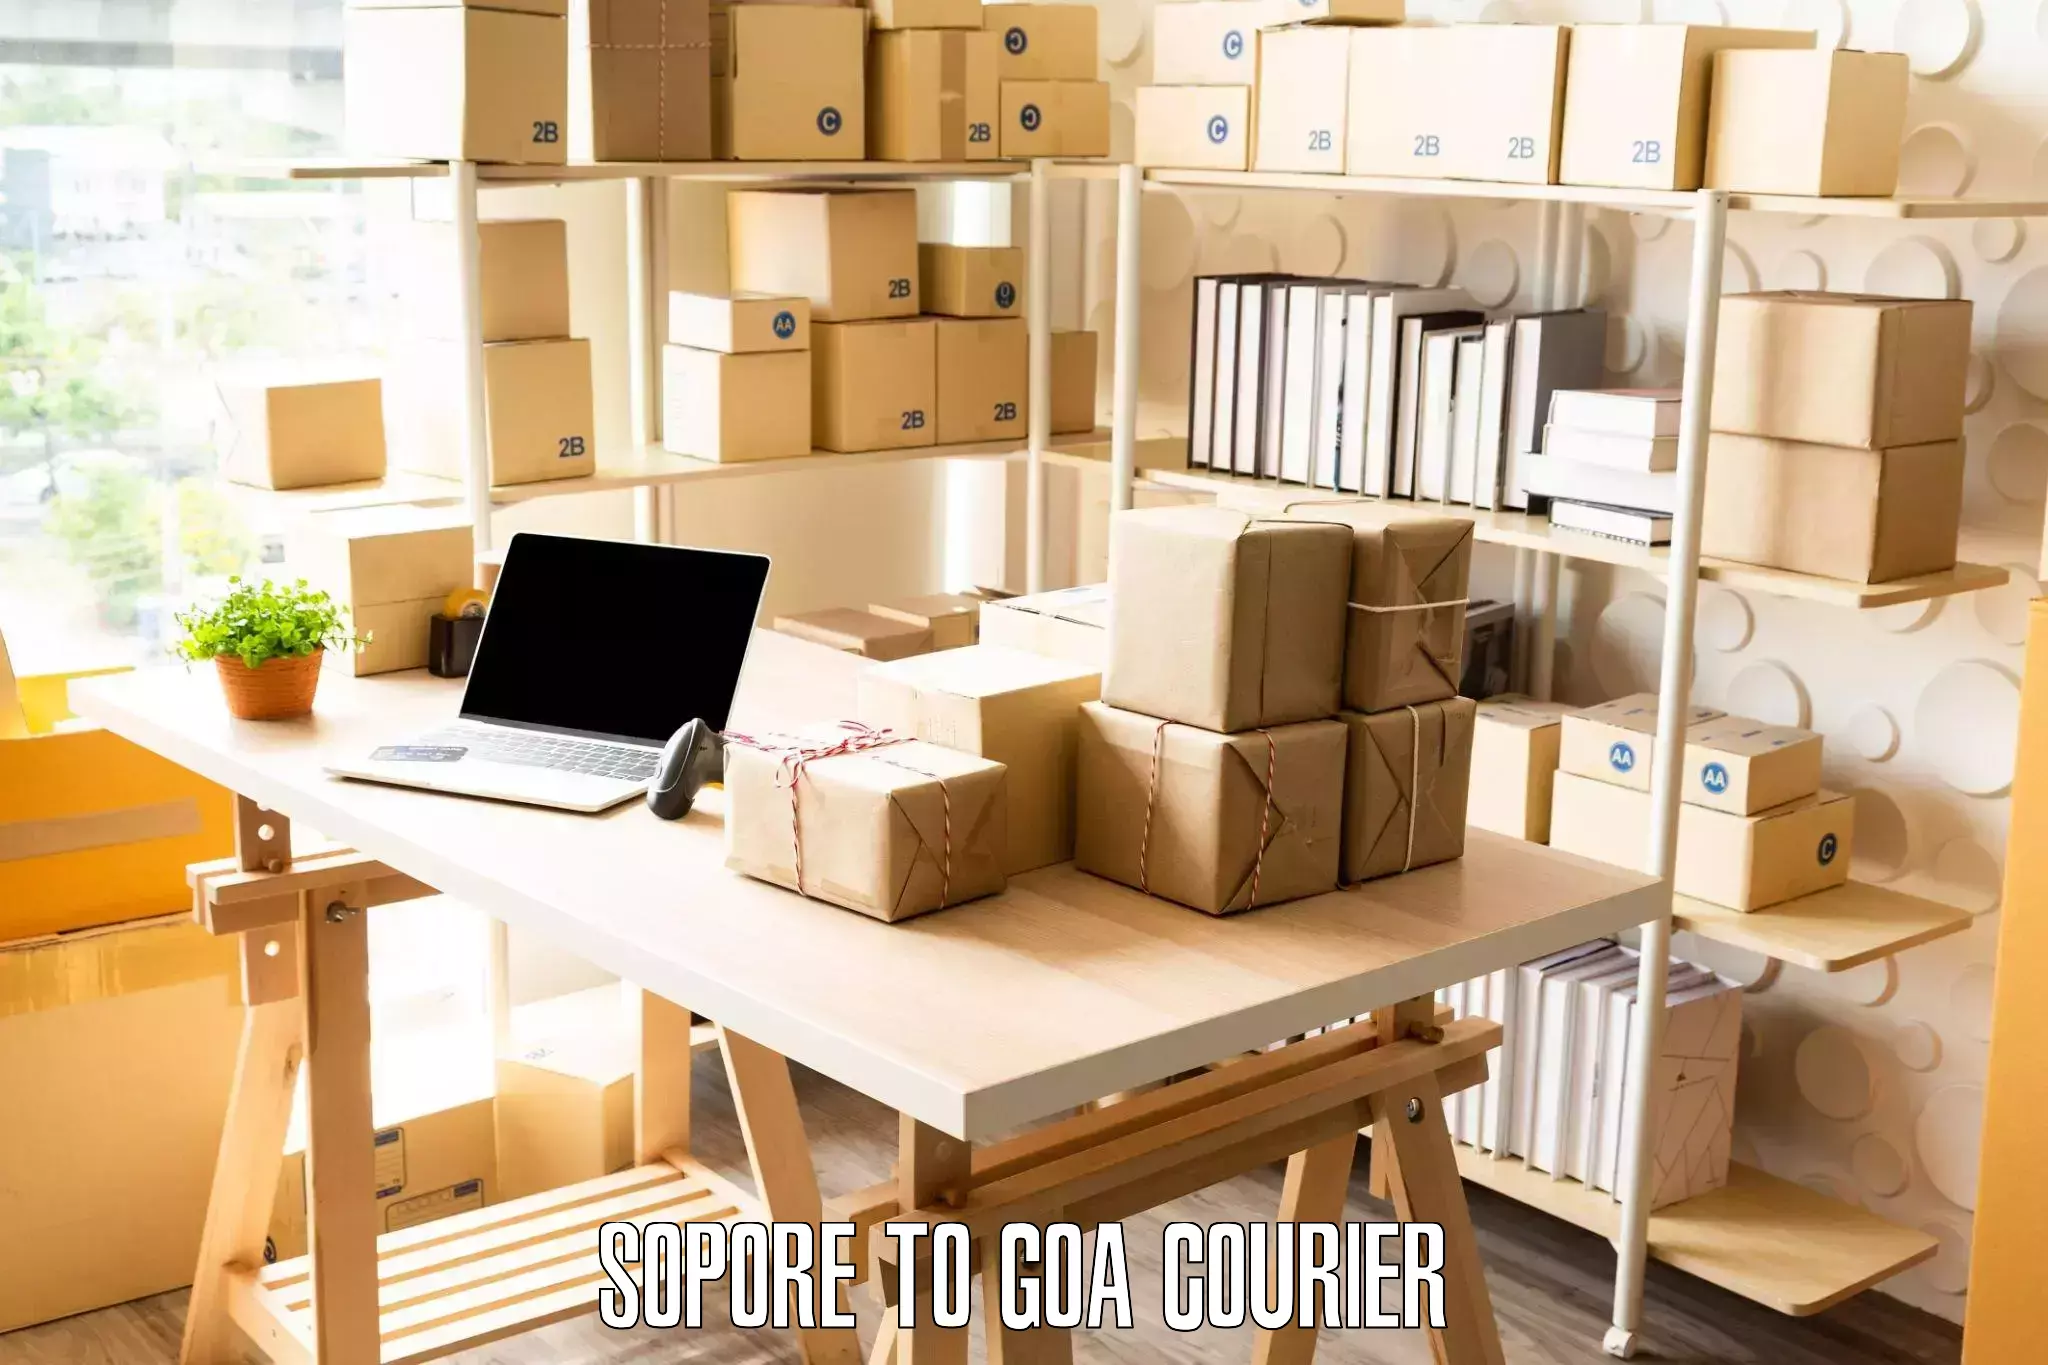 Furniture delivery service in Sopore to Goa